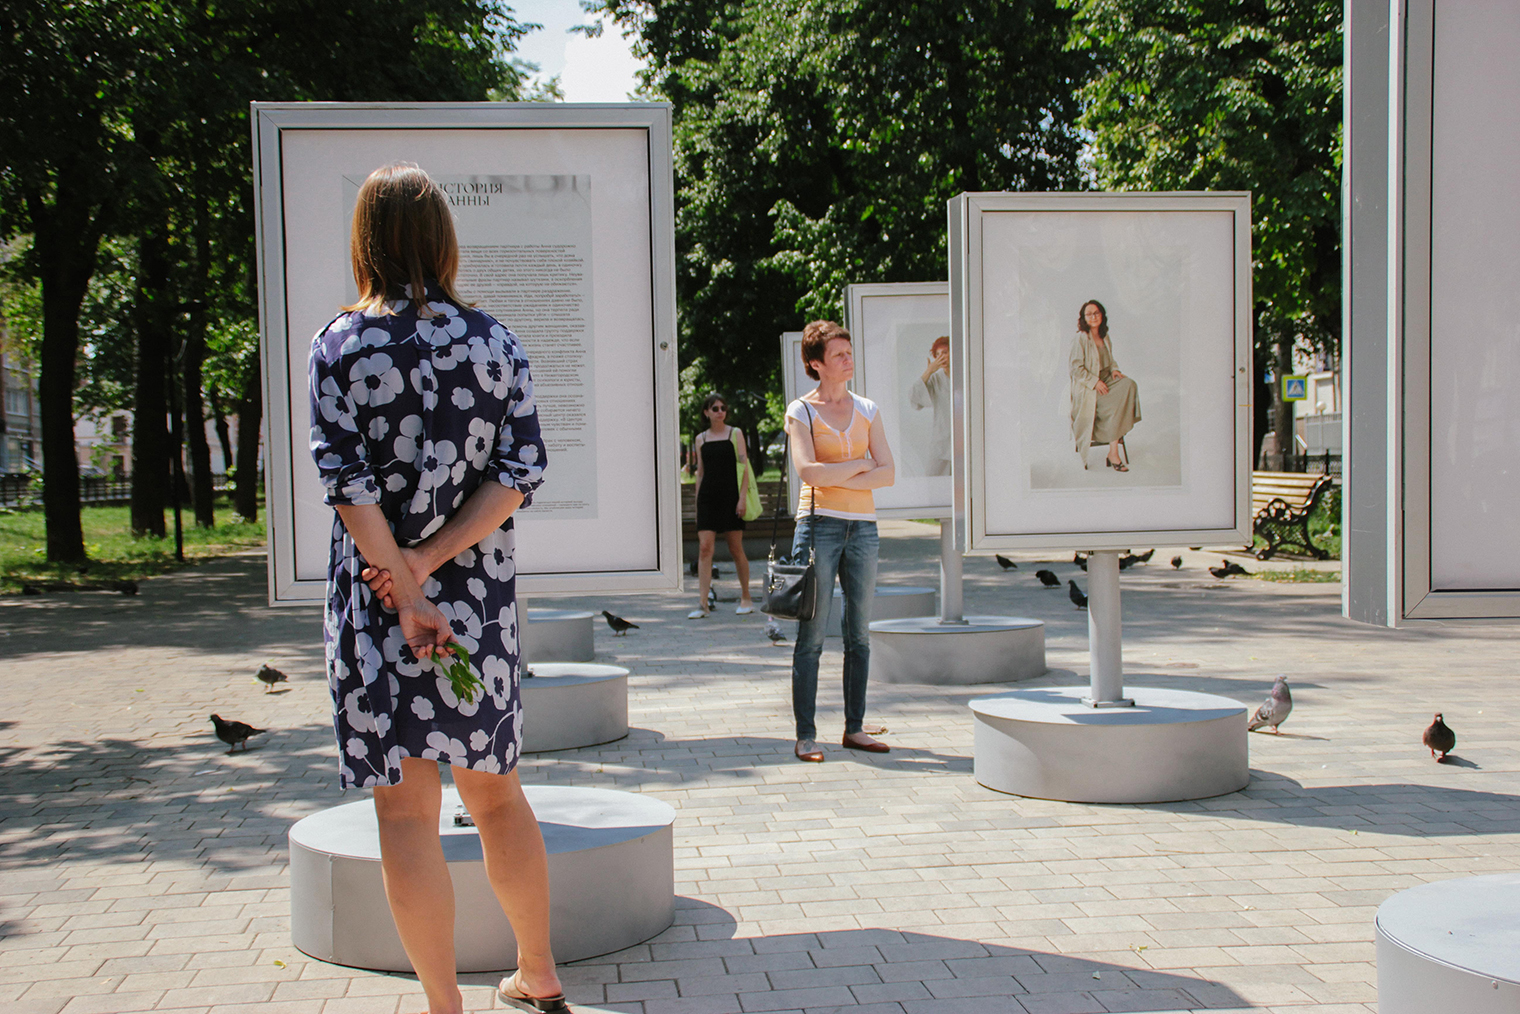 Чтобы показать, что из насильственных отношений можно выйти, Нижегородский женский кризисный центр провел выставку с шестью историями женщин, которым нам удалось помочь